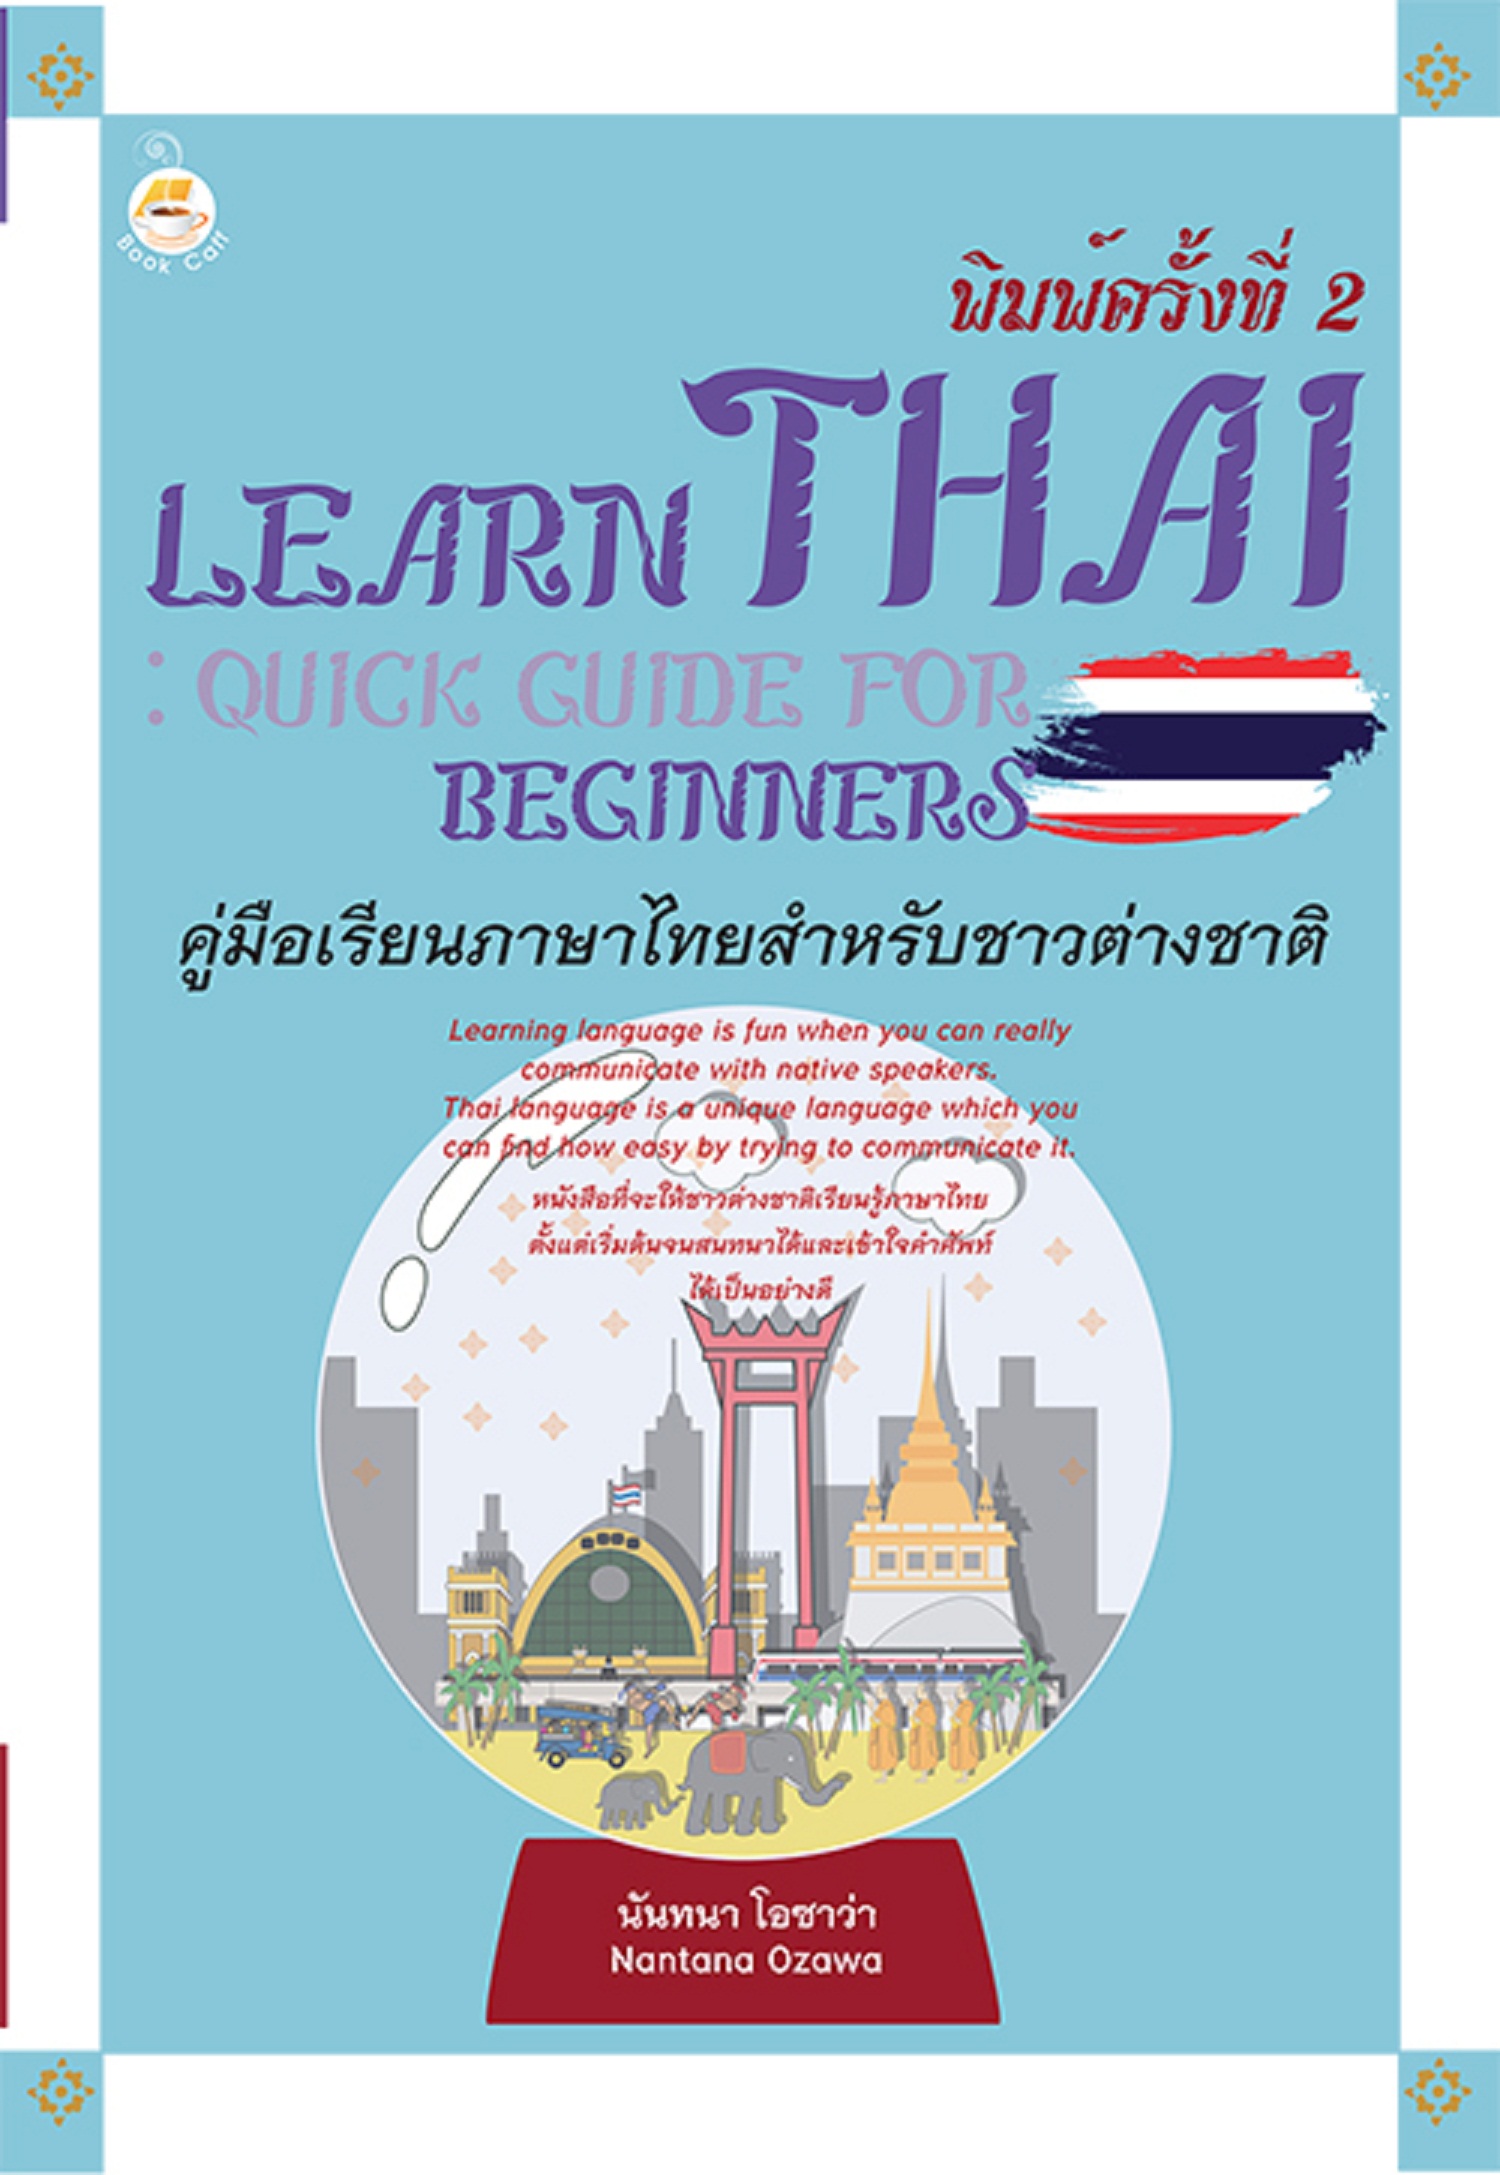 Learn Thai : Quick Guide for Beginners คู่มือเรียนภาษาไทยสำหรับชาวต่างชาติ พิมพ์ครั้งที่ 2